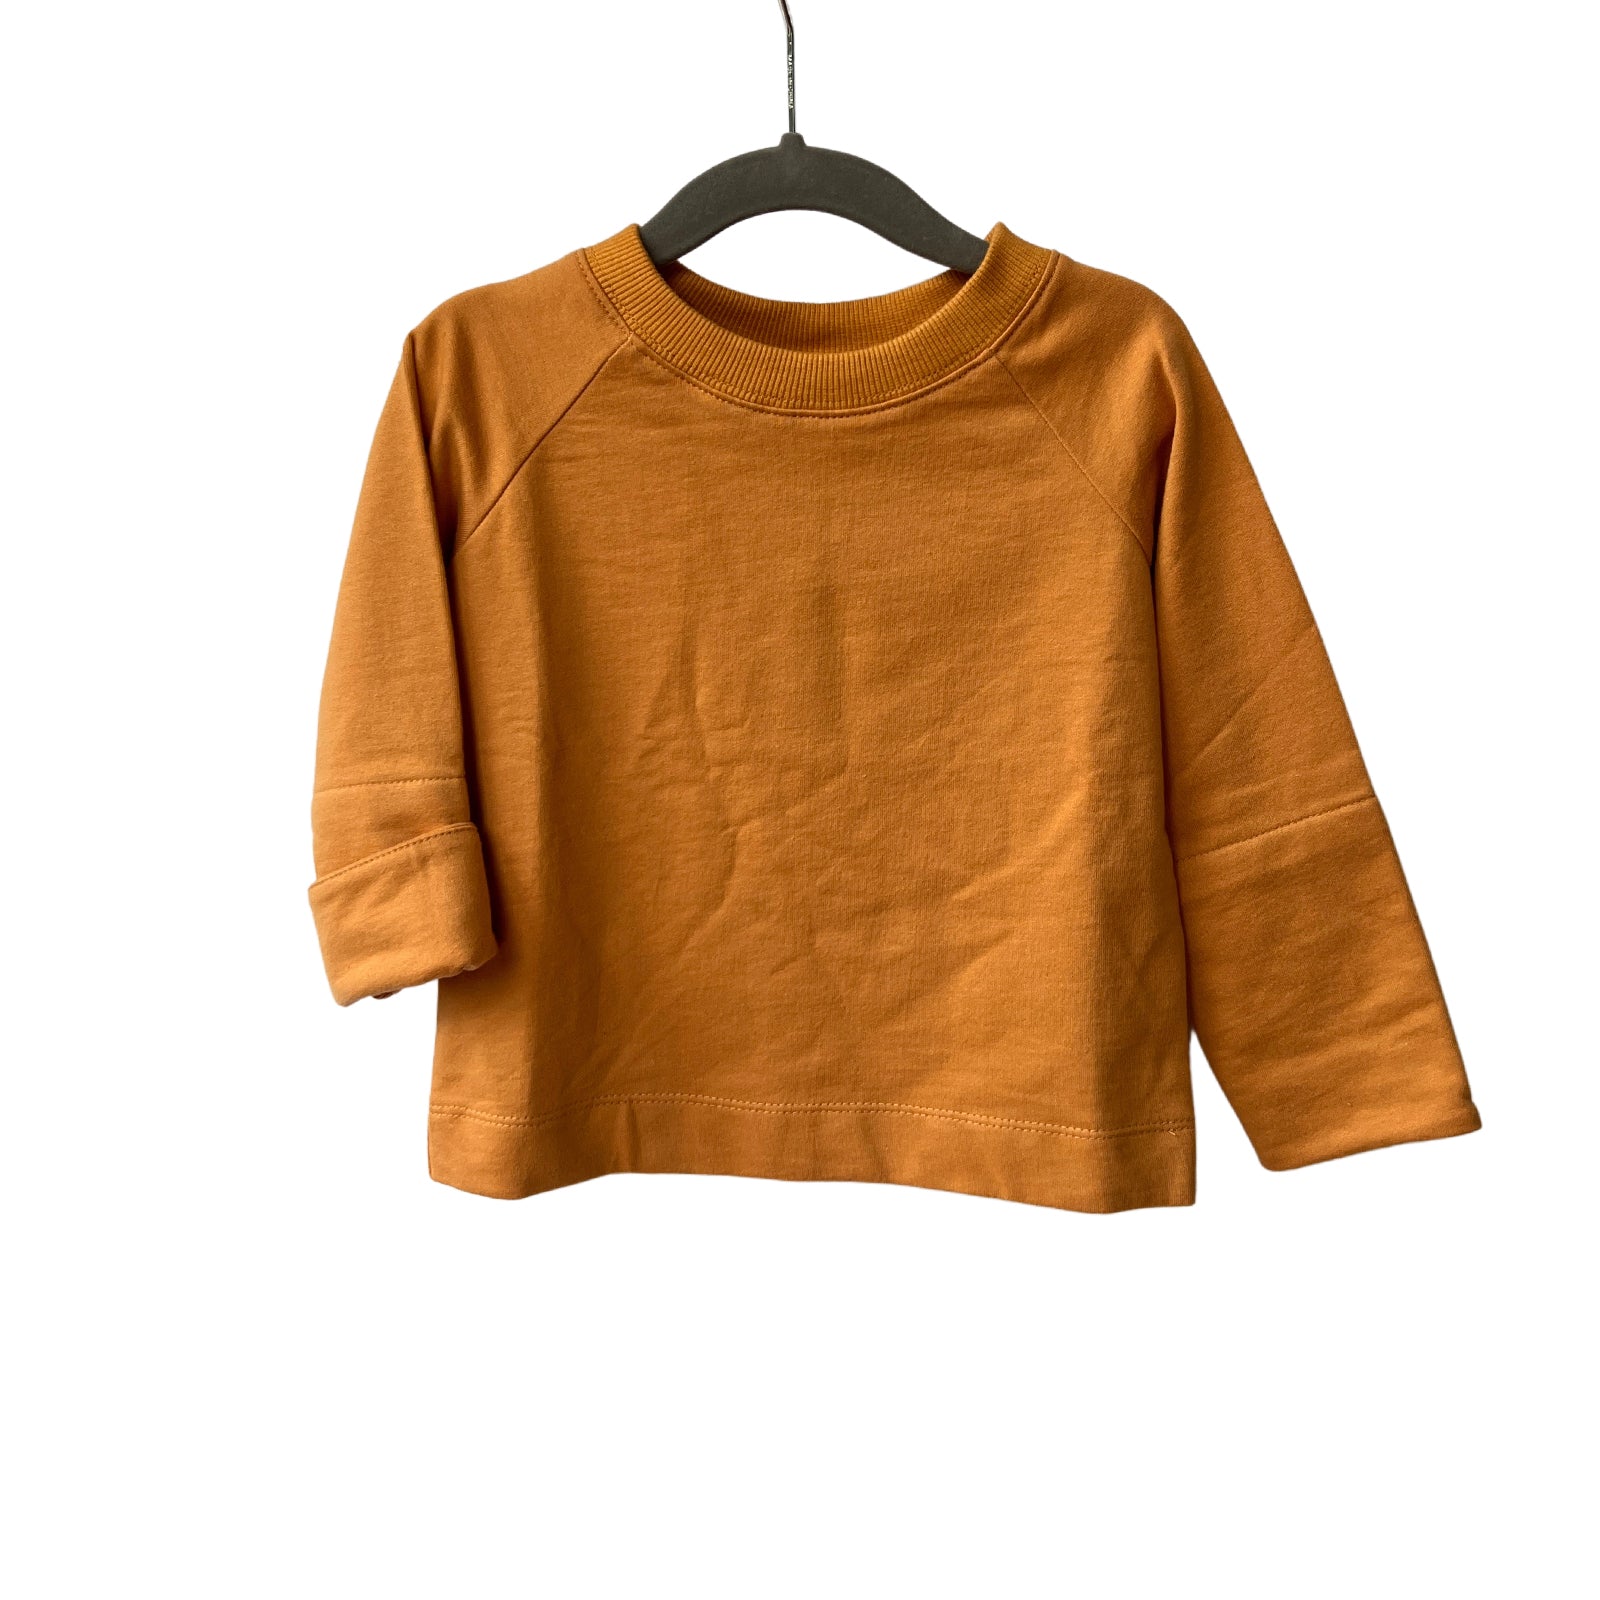 2T OOAK Yolo Yellow Cotton Sweatshirt